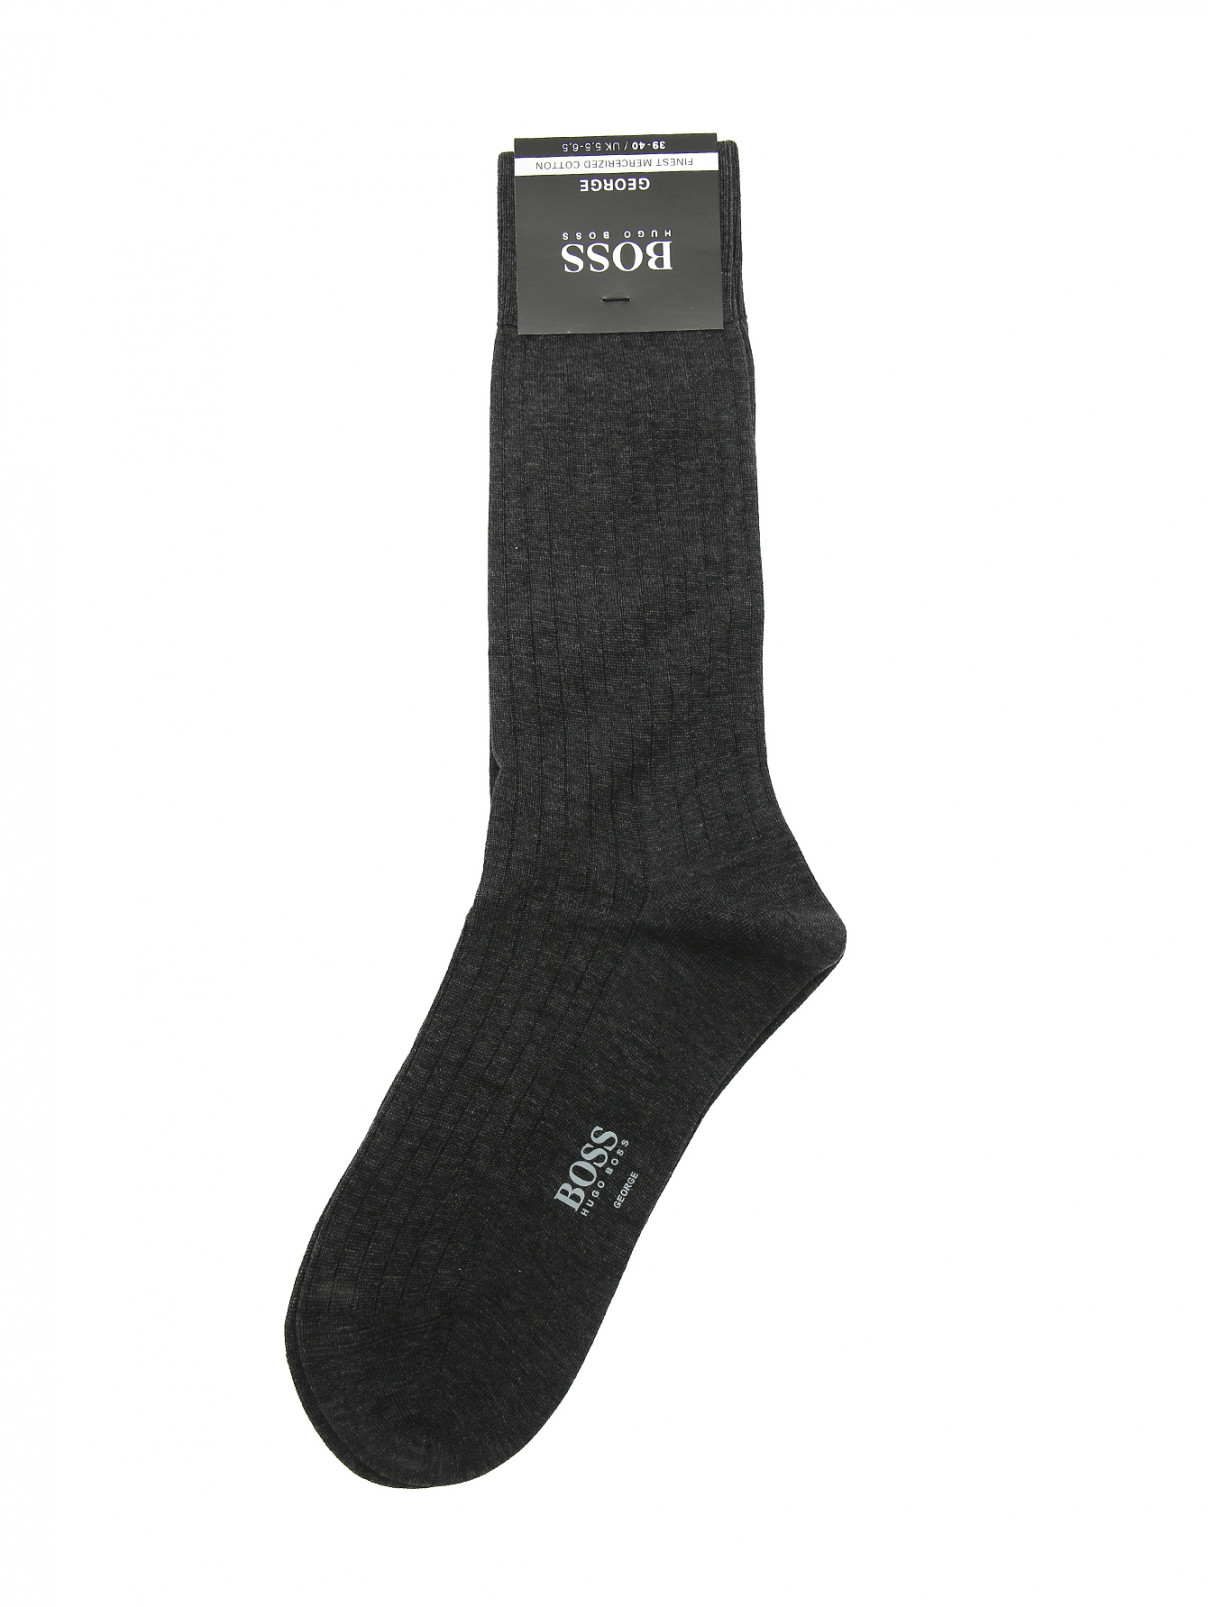 Носки из хлопка Hugo Boss  –  Общий вид  – Цвет:  Серый